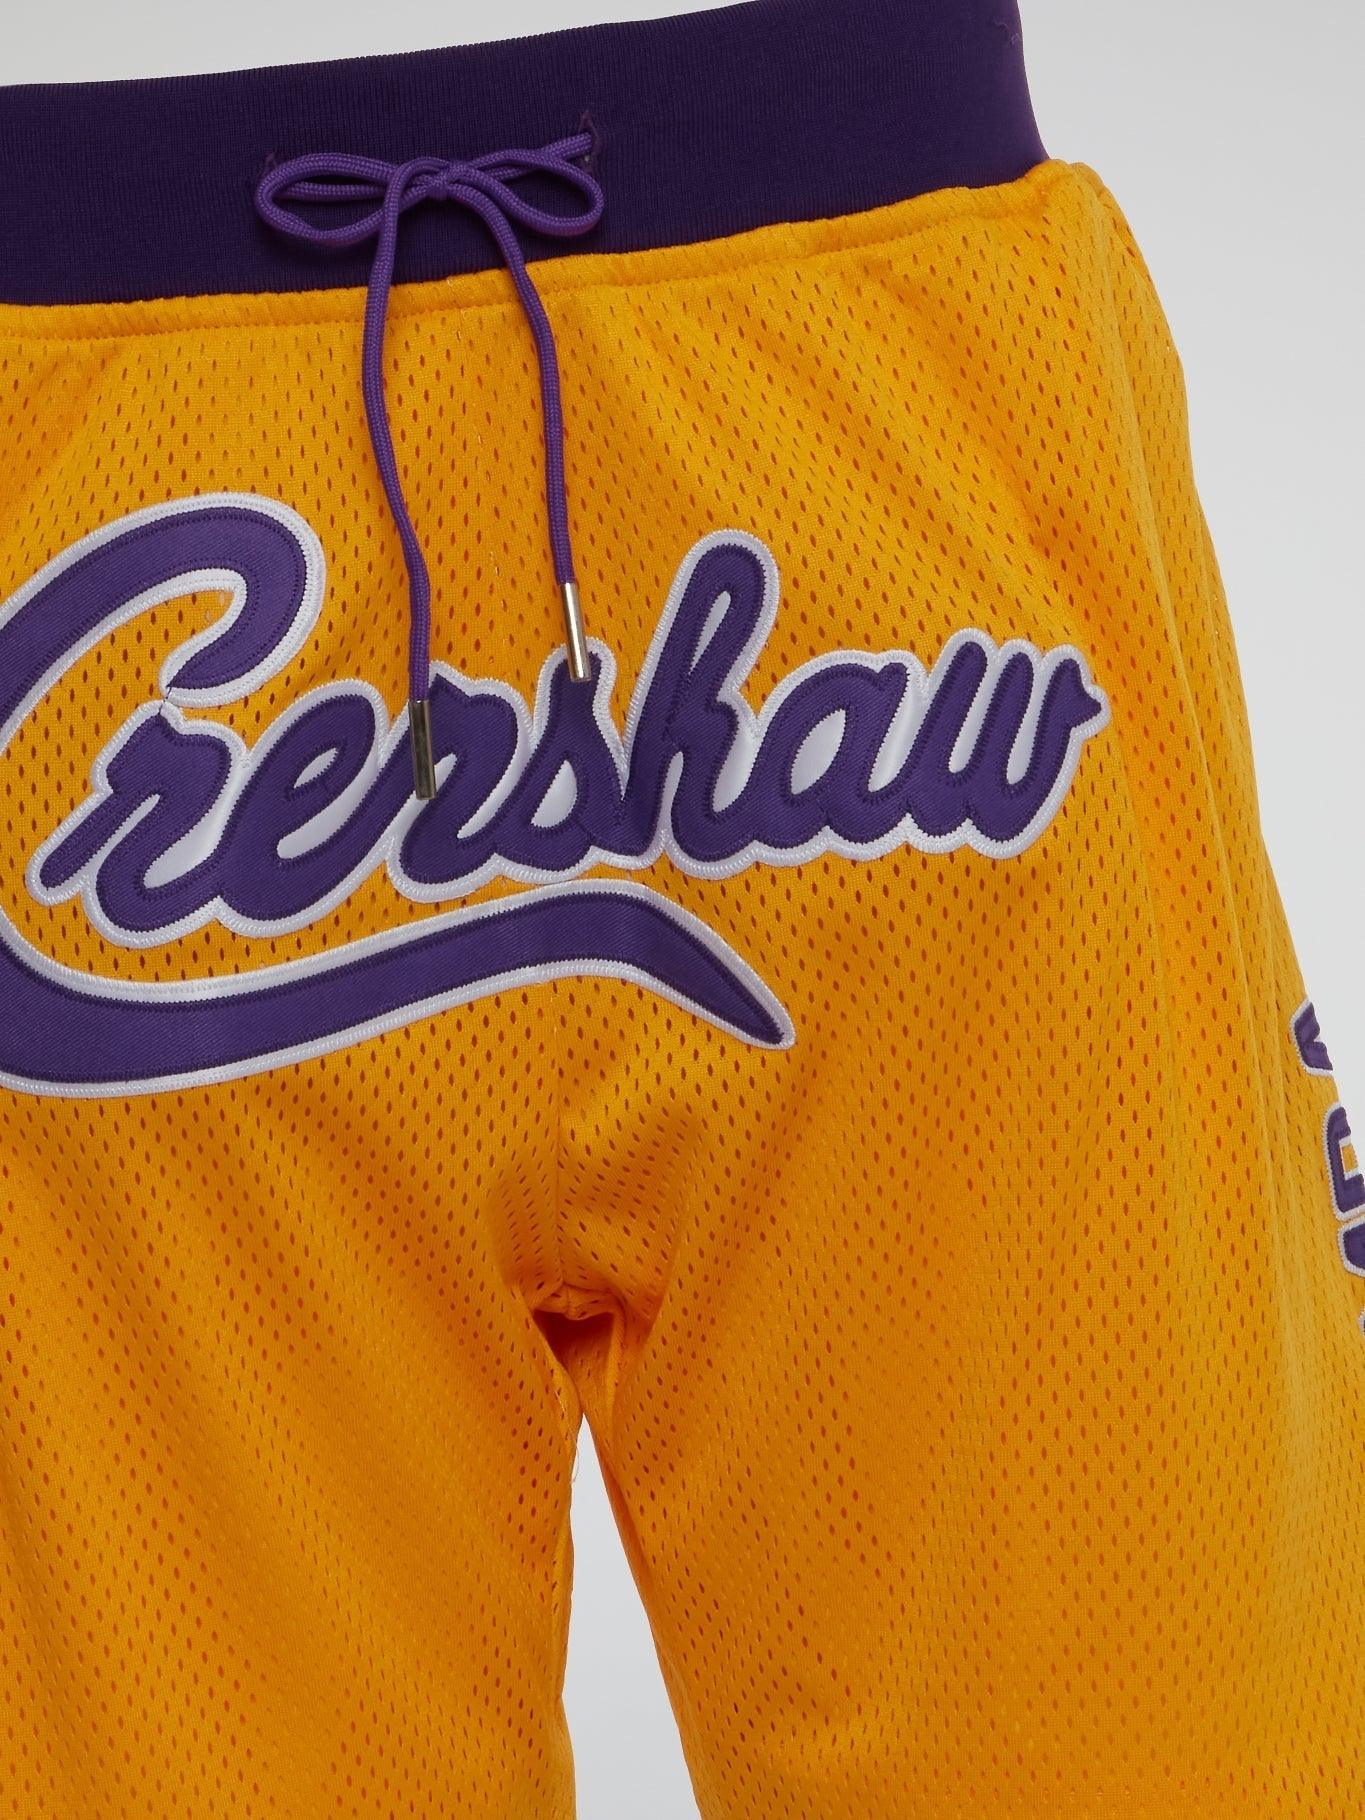 LA Kobe Bryant Crenshaw Shorts - B-Hype Society